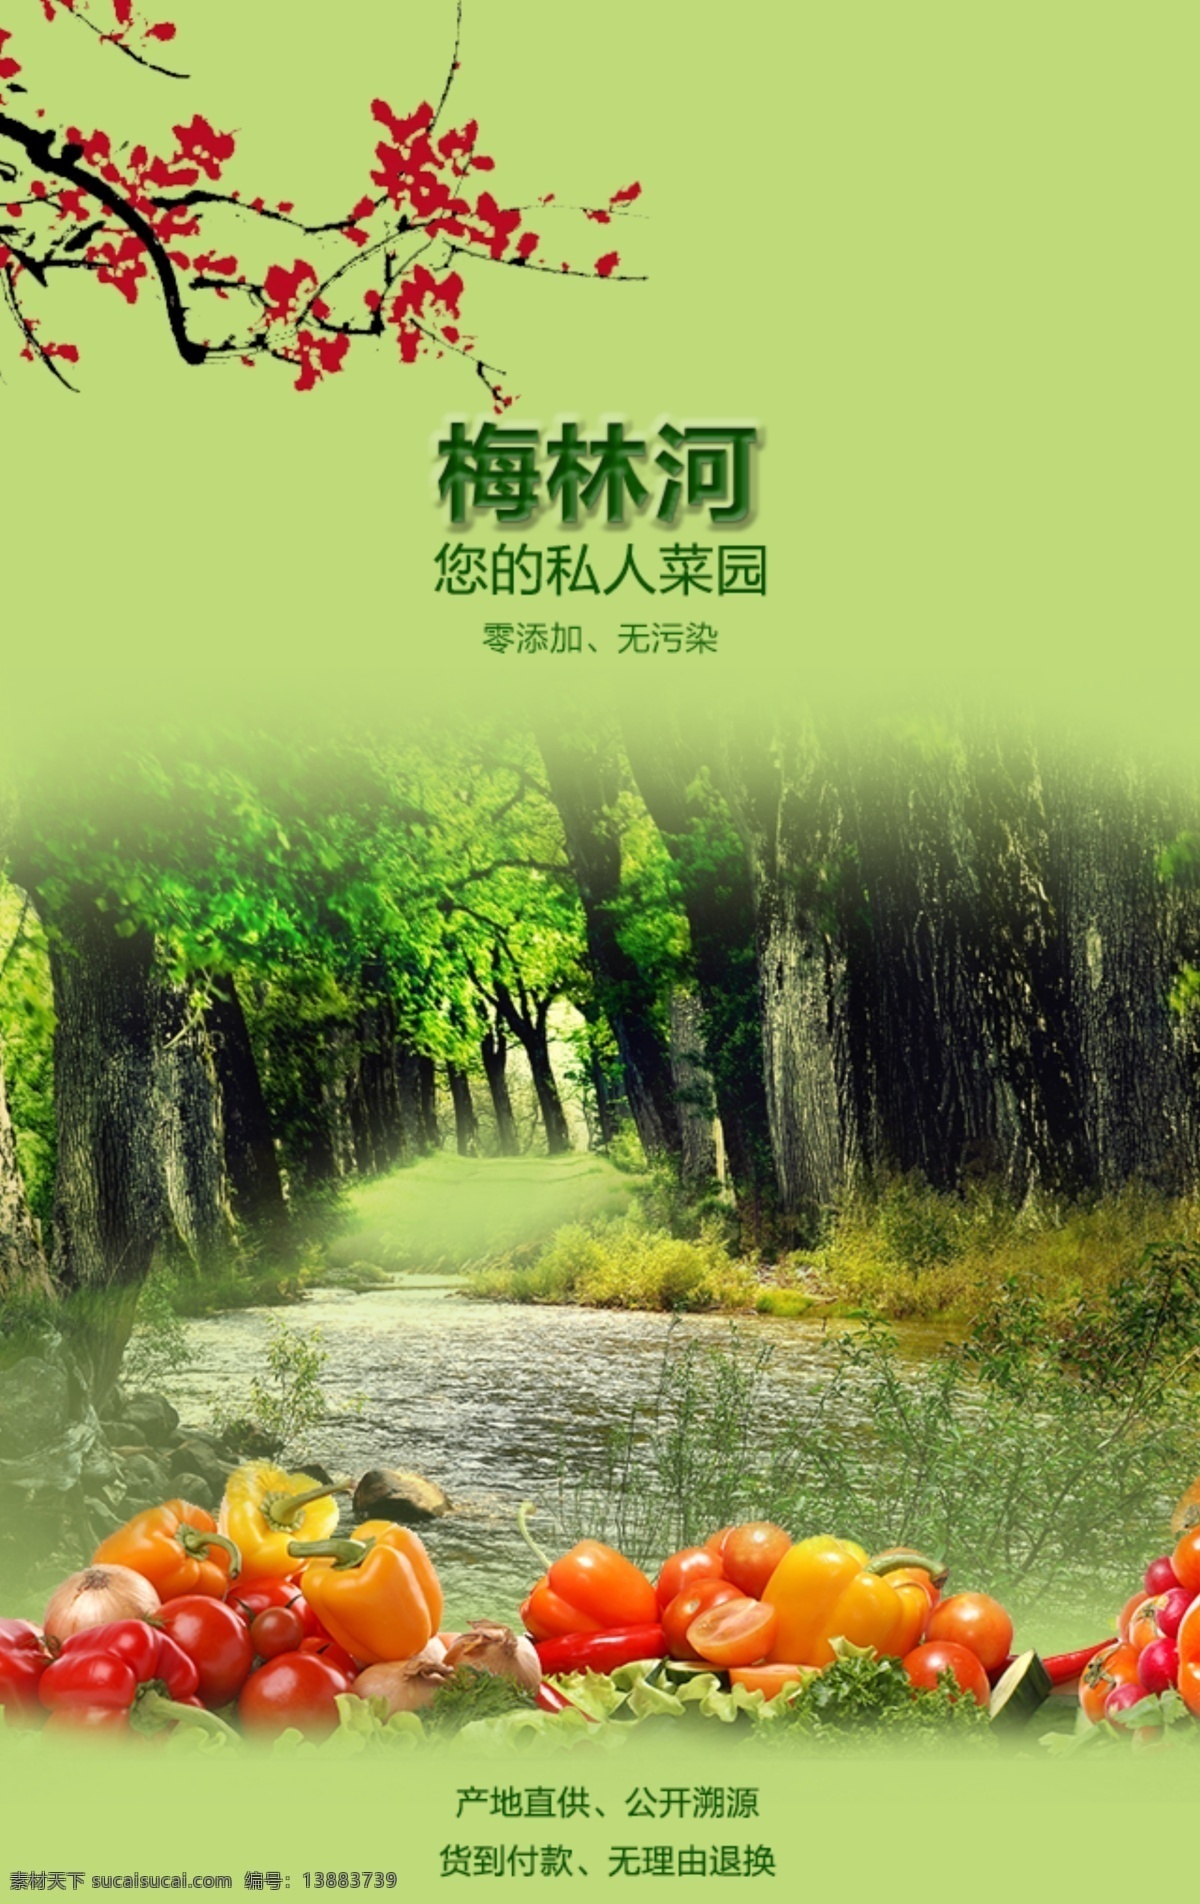 蔬菜 手机 端 海报 封面设计 排版 小河 森林 黄色